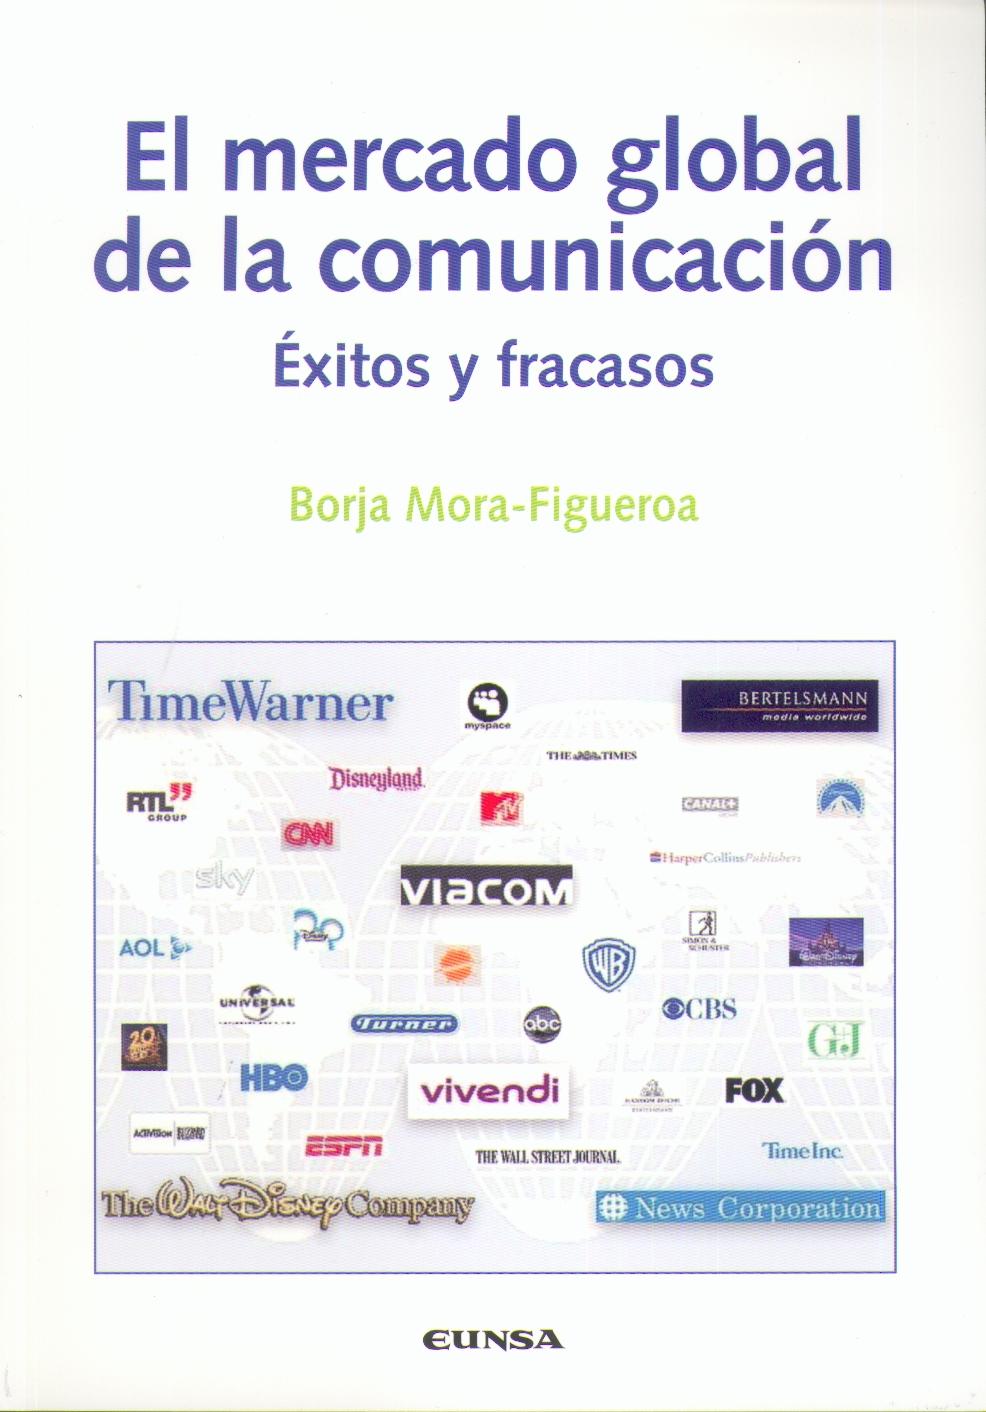 El Mercado Global y la Comunicacion "Exitos y Fracasos". Exitos y Fracasos